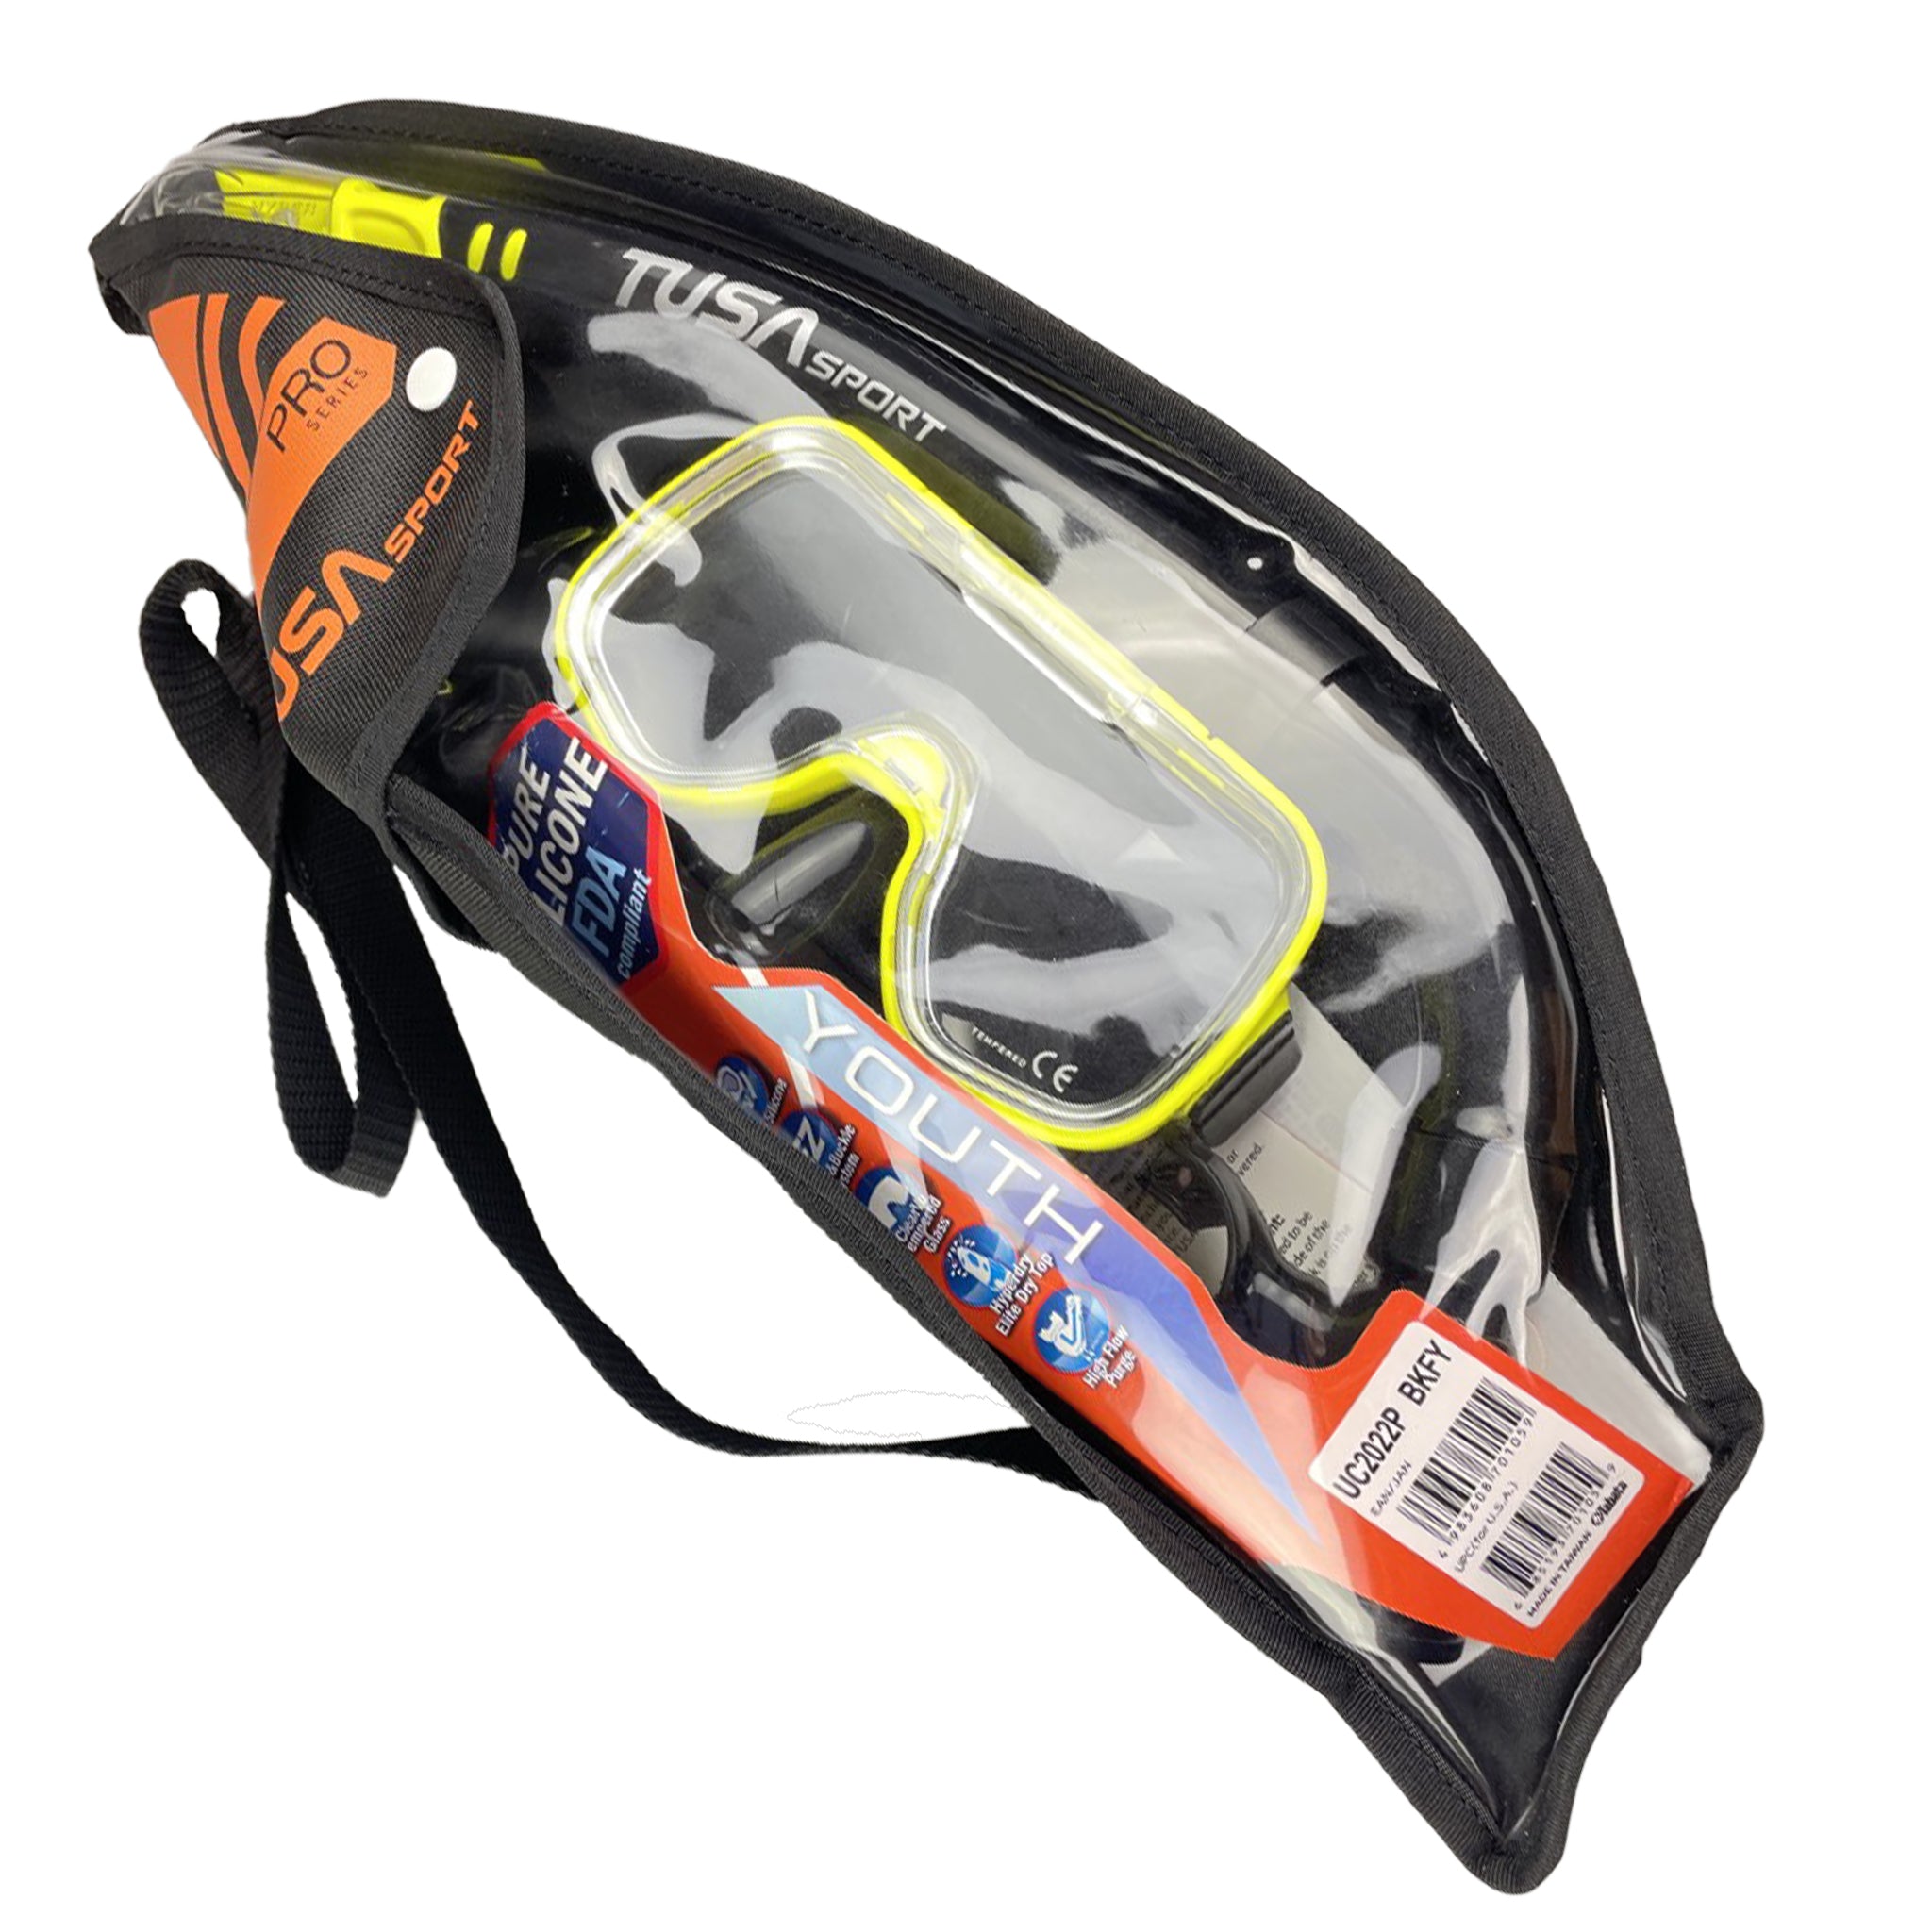 Tusa Mini-Kleio Mask & Dry Snorkel Set - In Carry Bag